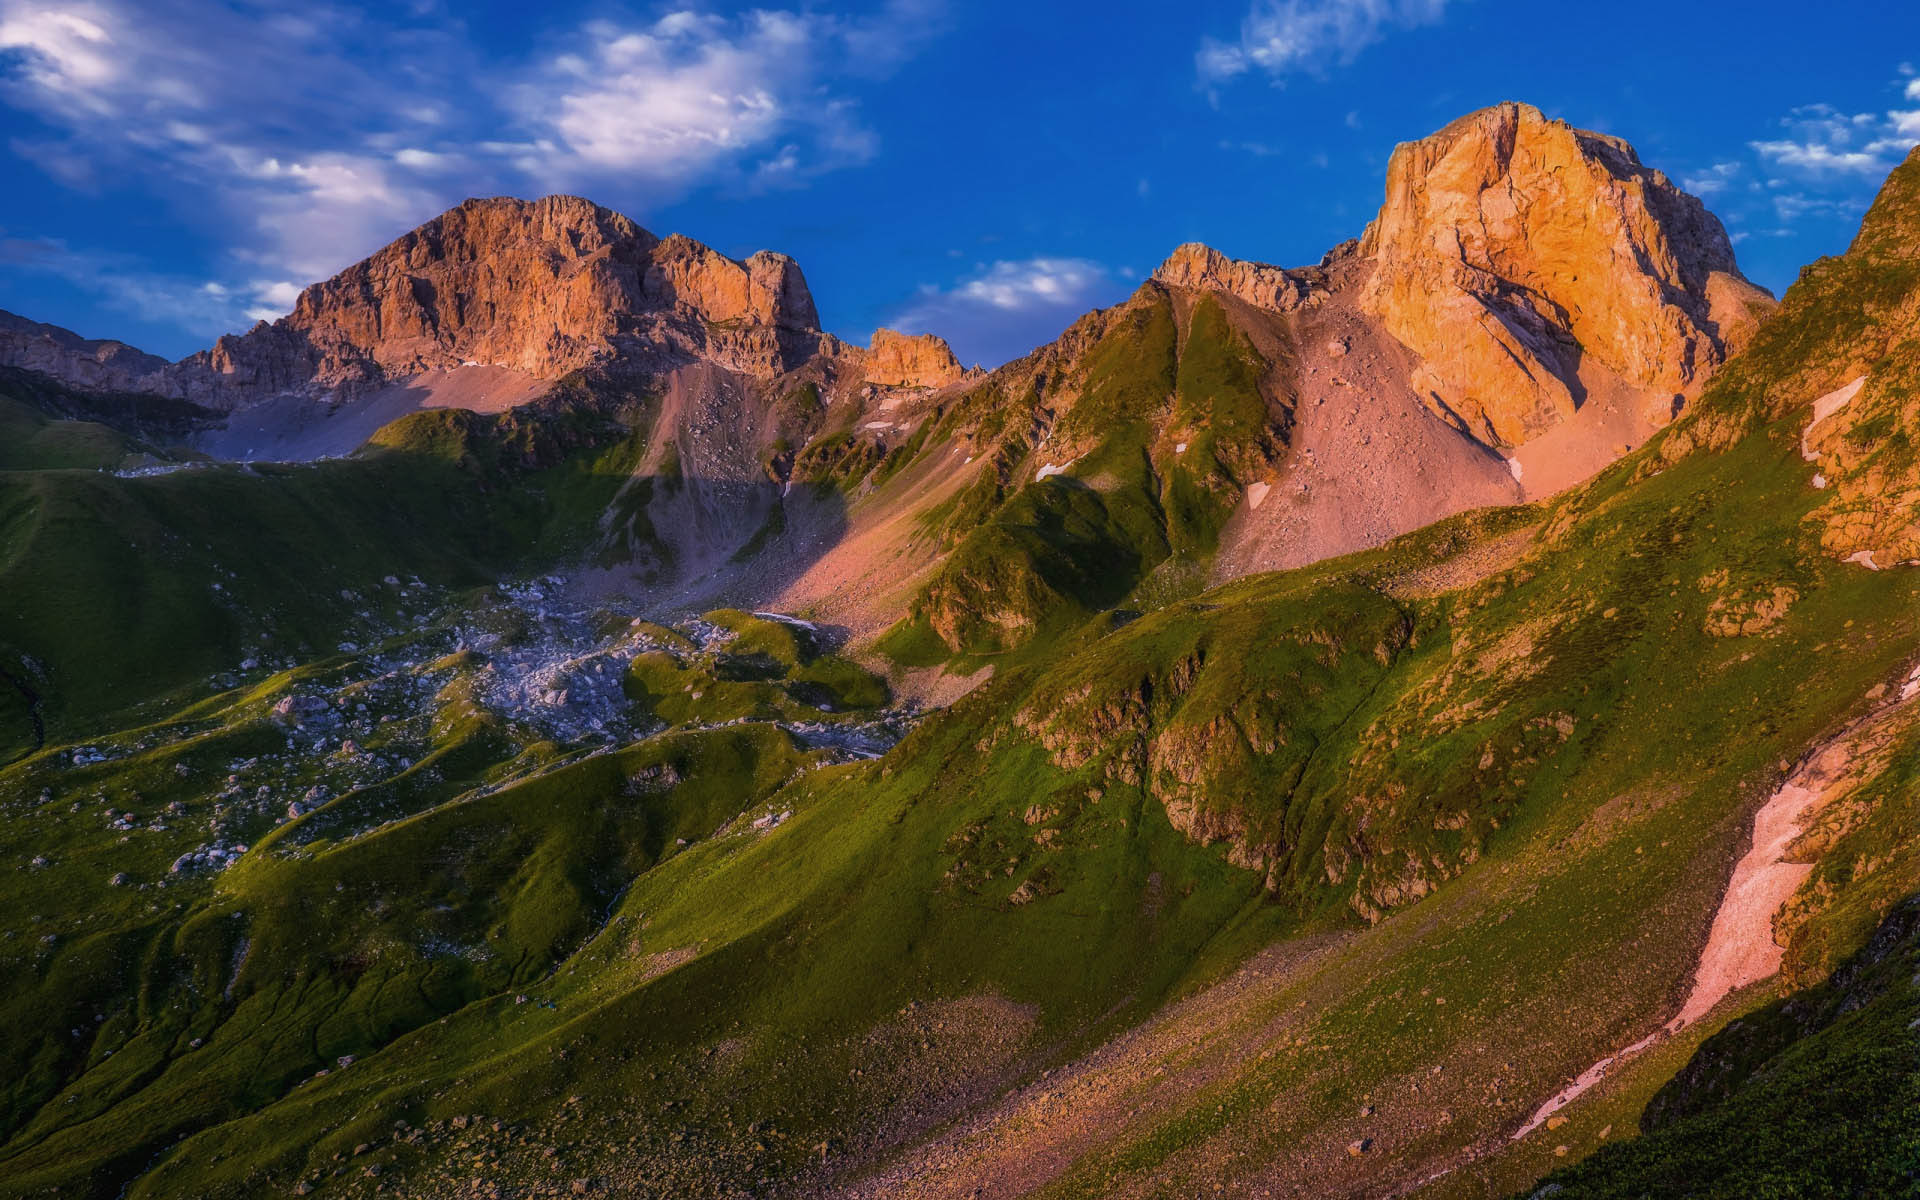 Caucasus Mountains of Georgia